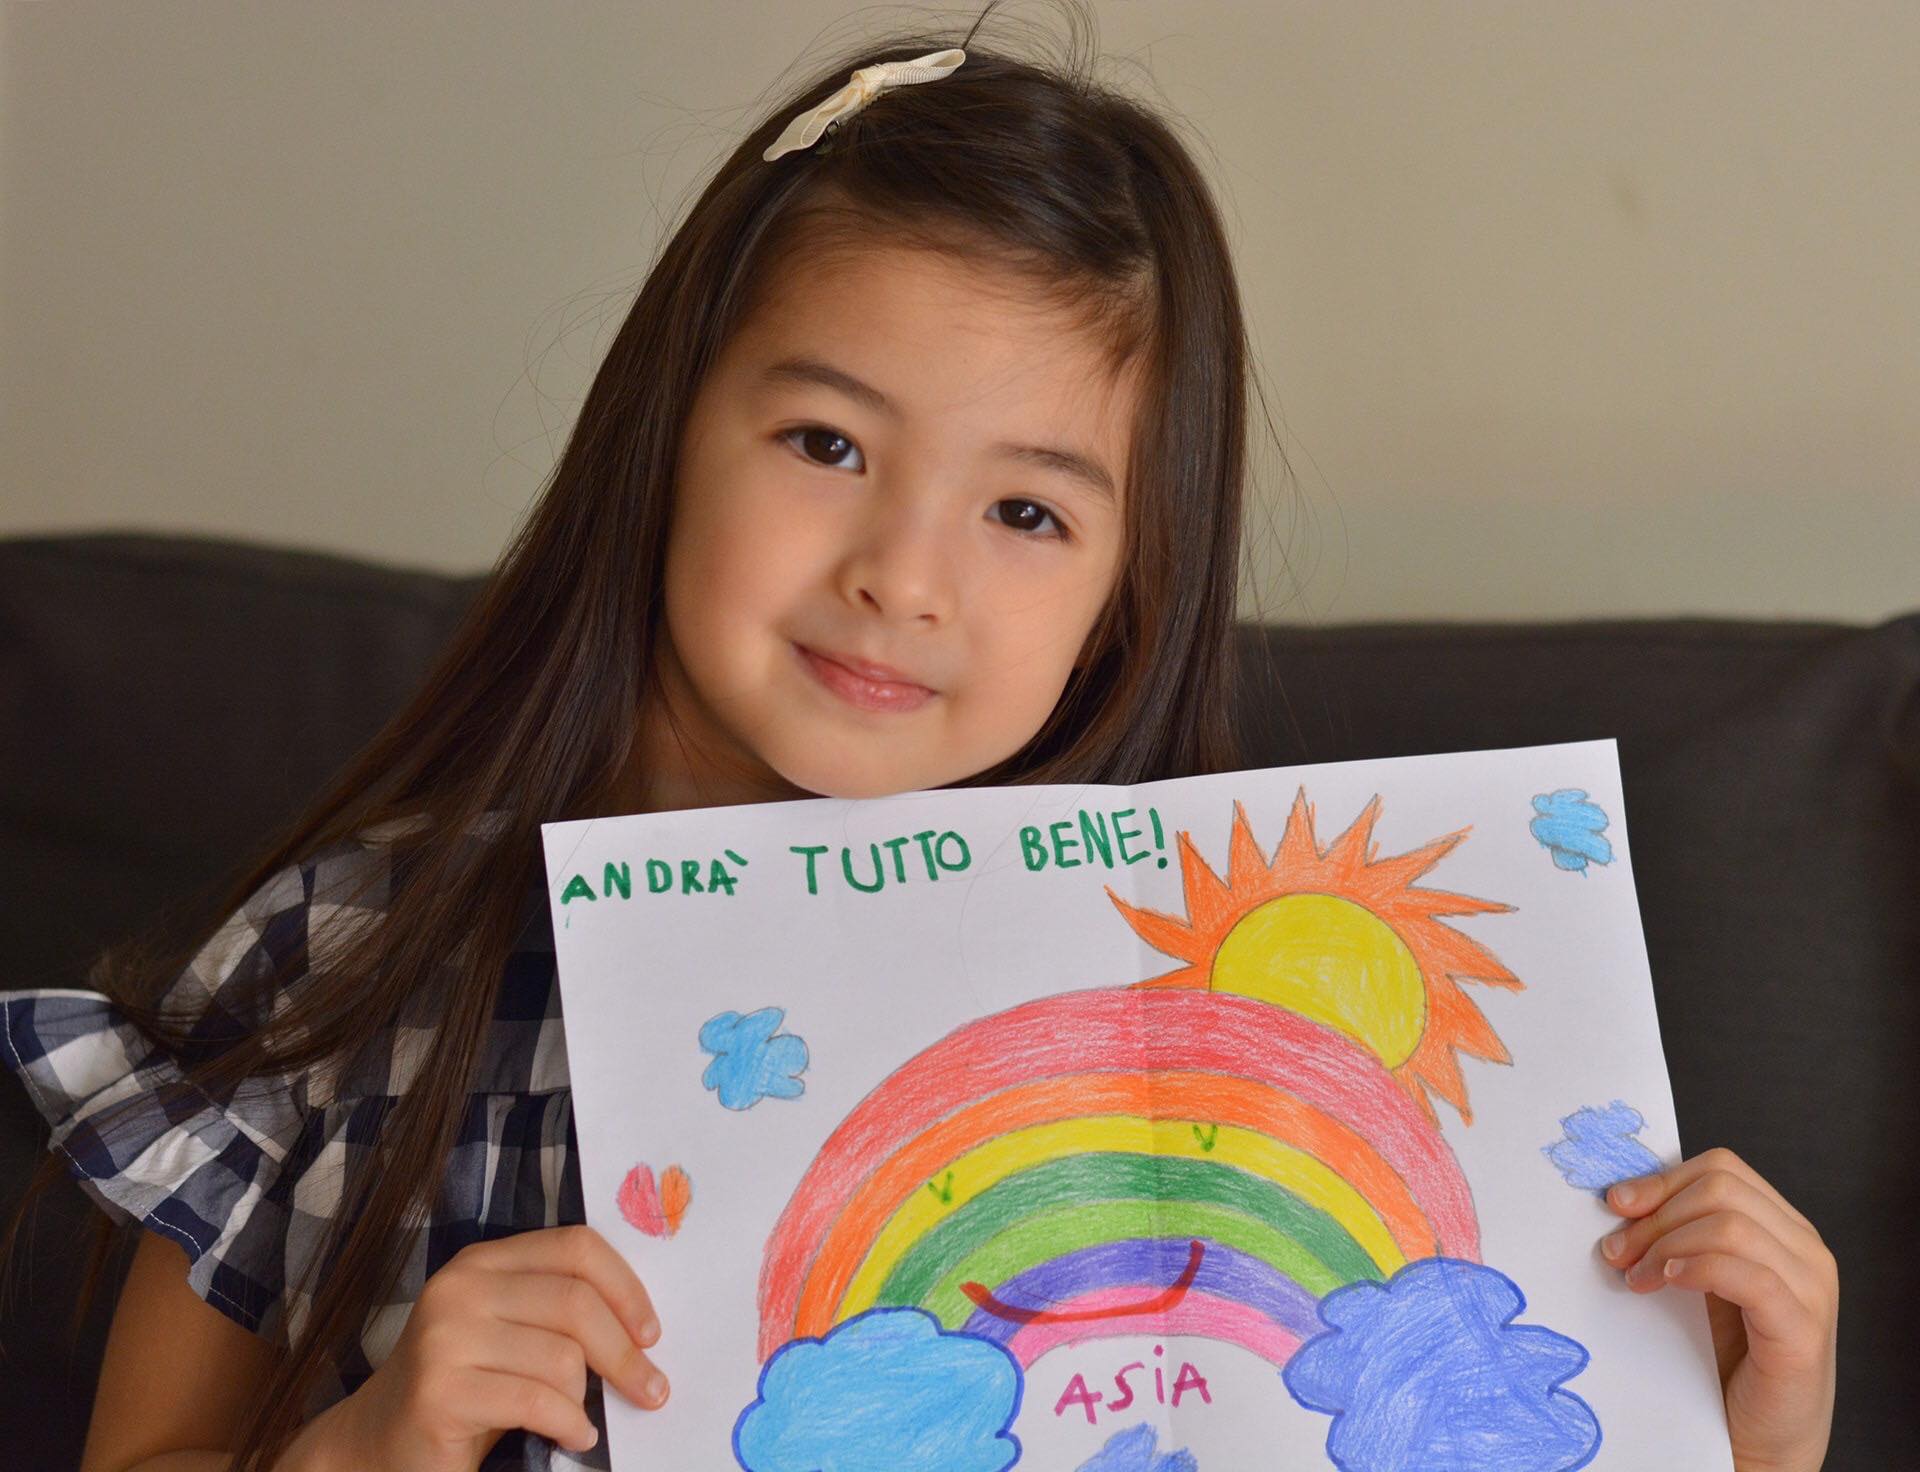 Vẽ tranh dễ thương và đáng yêu chỉ với một em bé Việt Nam. Tranh vẽ của bé chứa đựng sự tinh tế và tưởng tượng phong phú, cùng với màu sắc tươi sáng và tình cảm thể hiện trong từng nét vẽ.